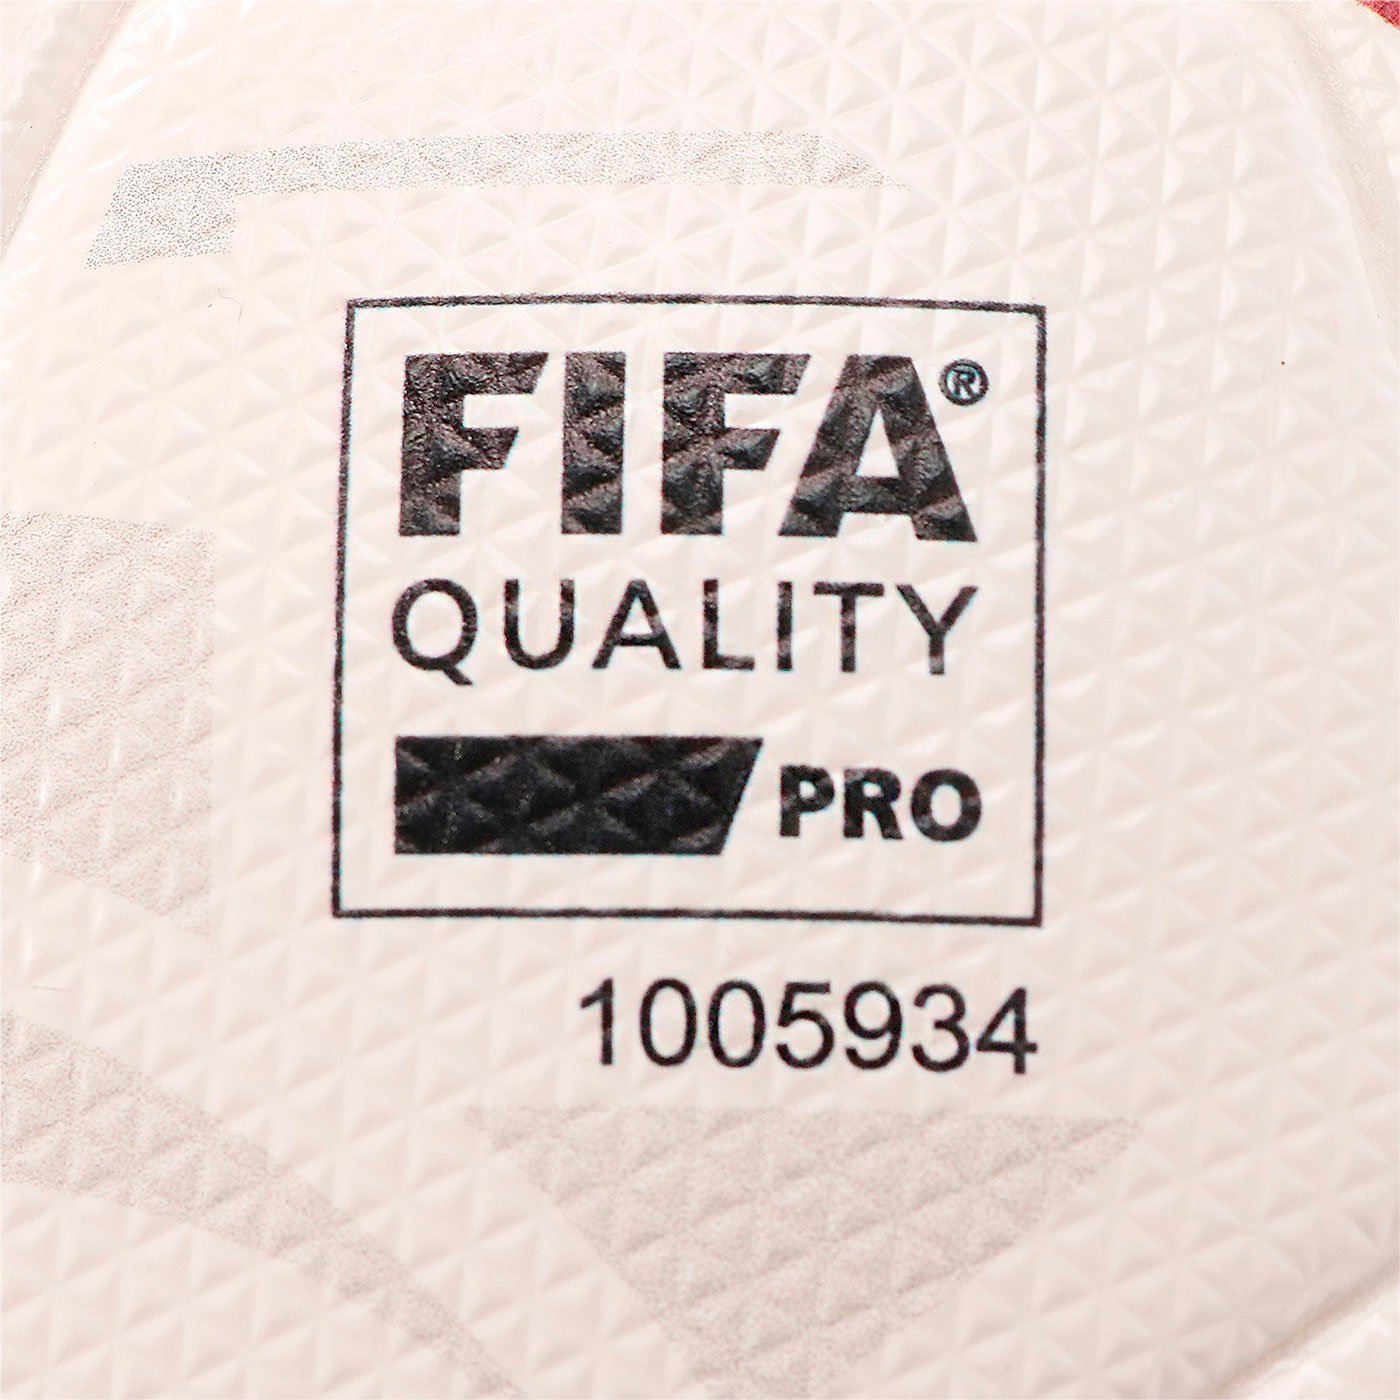 Мяч футбольный Puma La Liga 1 Accelerate (FIFA Quality Pro)